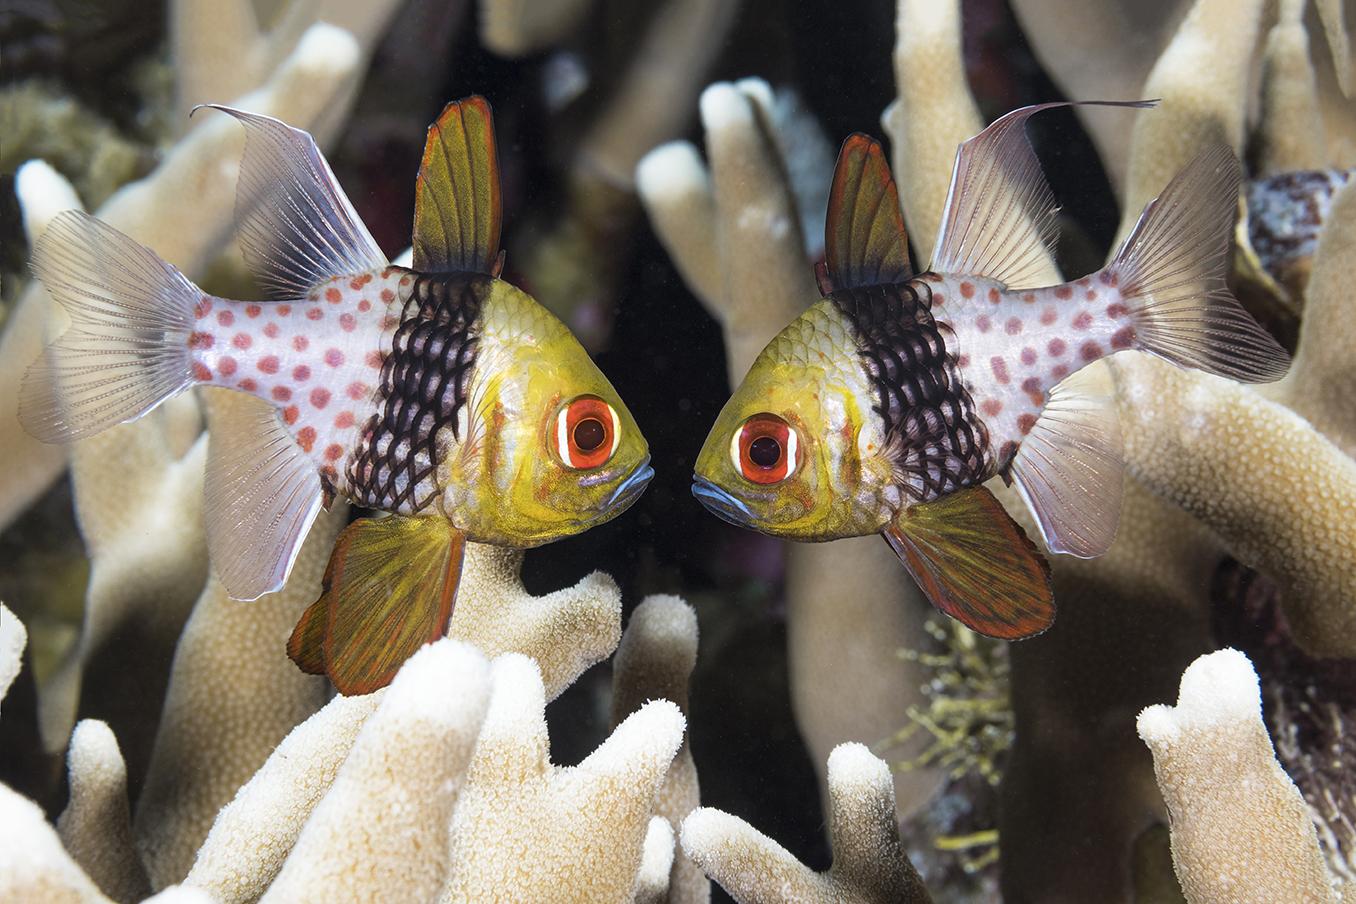 a pair of pajama cardinalfish strike a pose at Dunia Baru. Photo by Walt Stearns